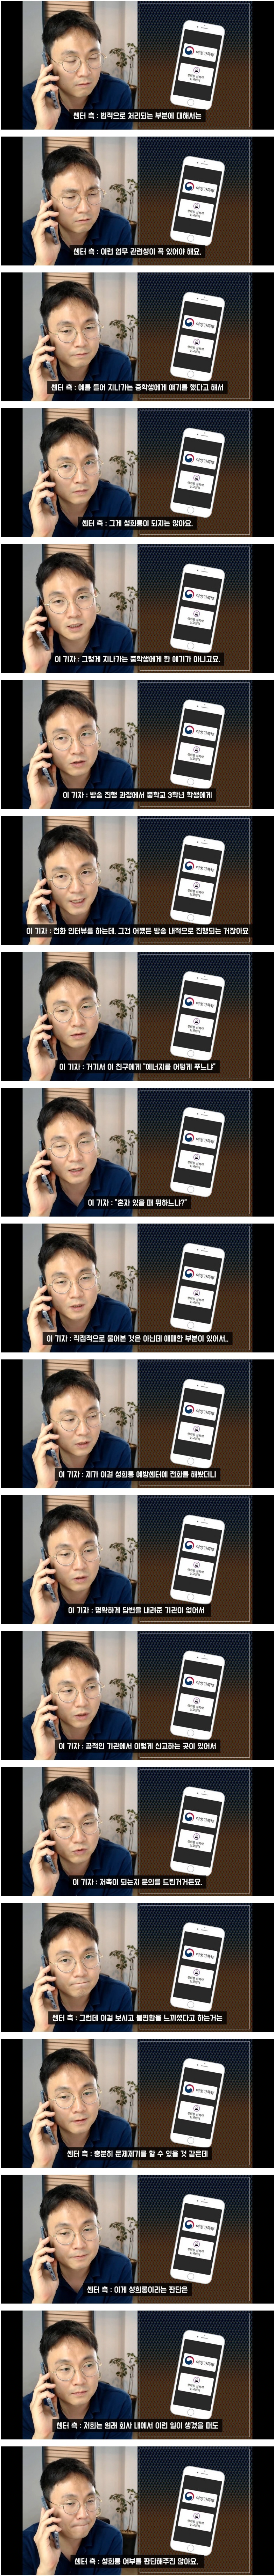 김민아 성희롱 발언에 대한 여가부 의견